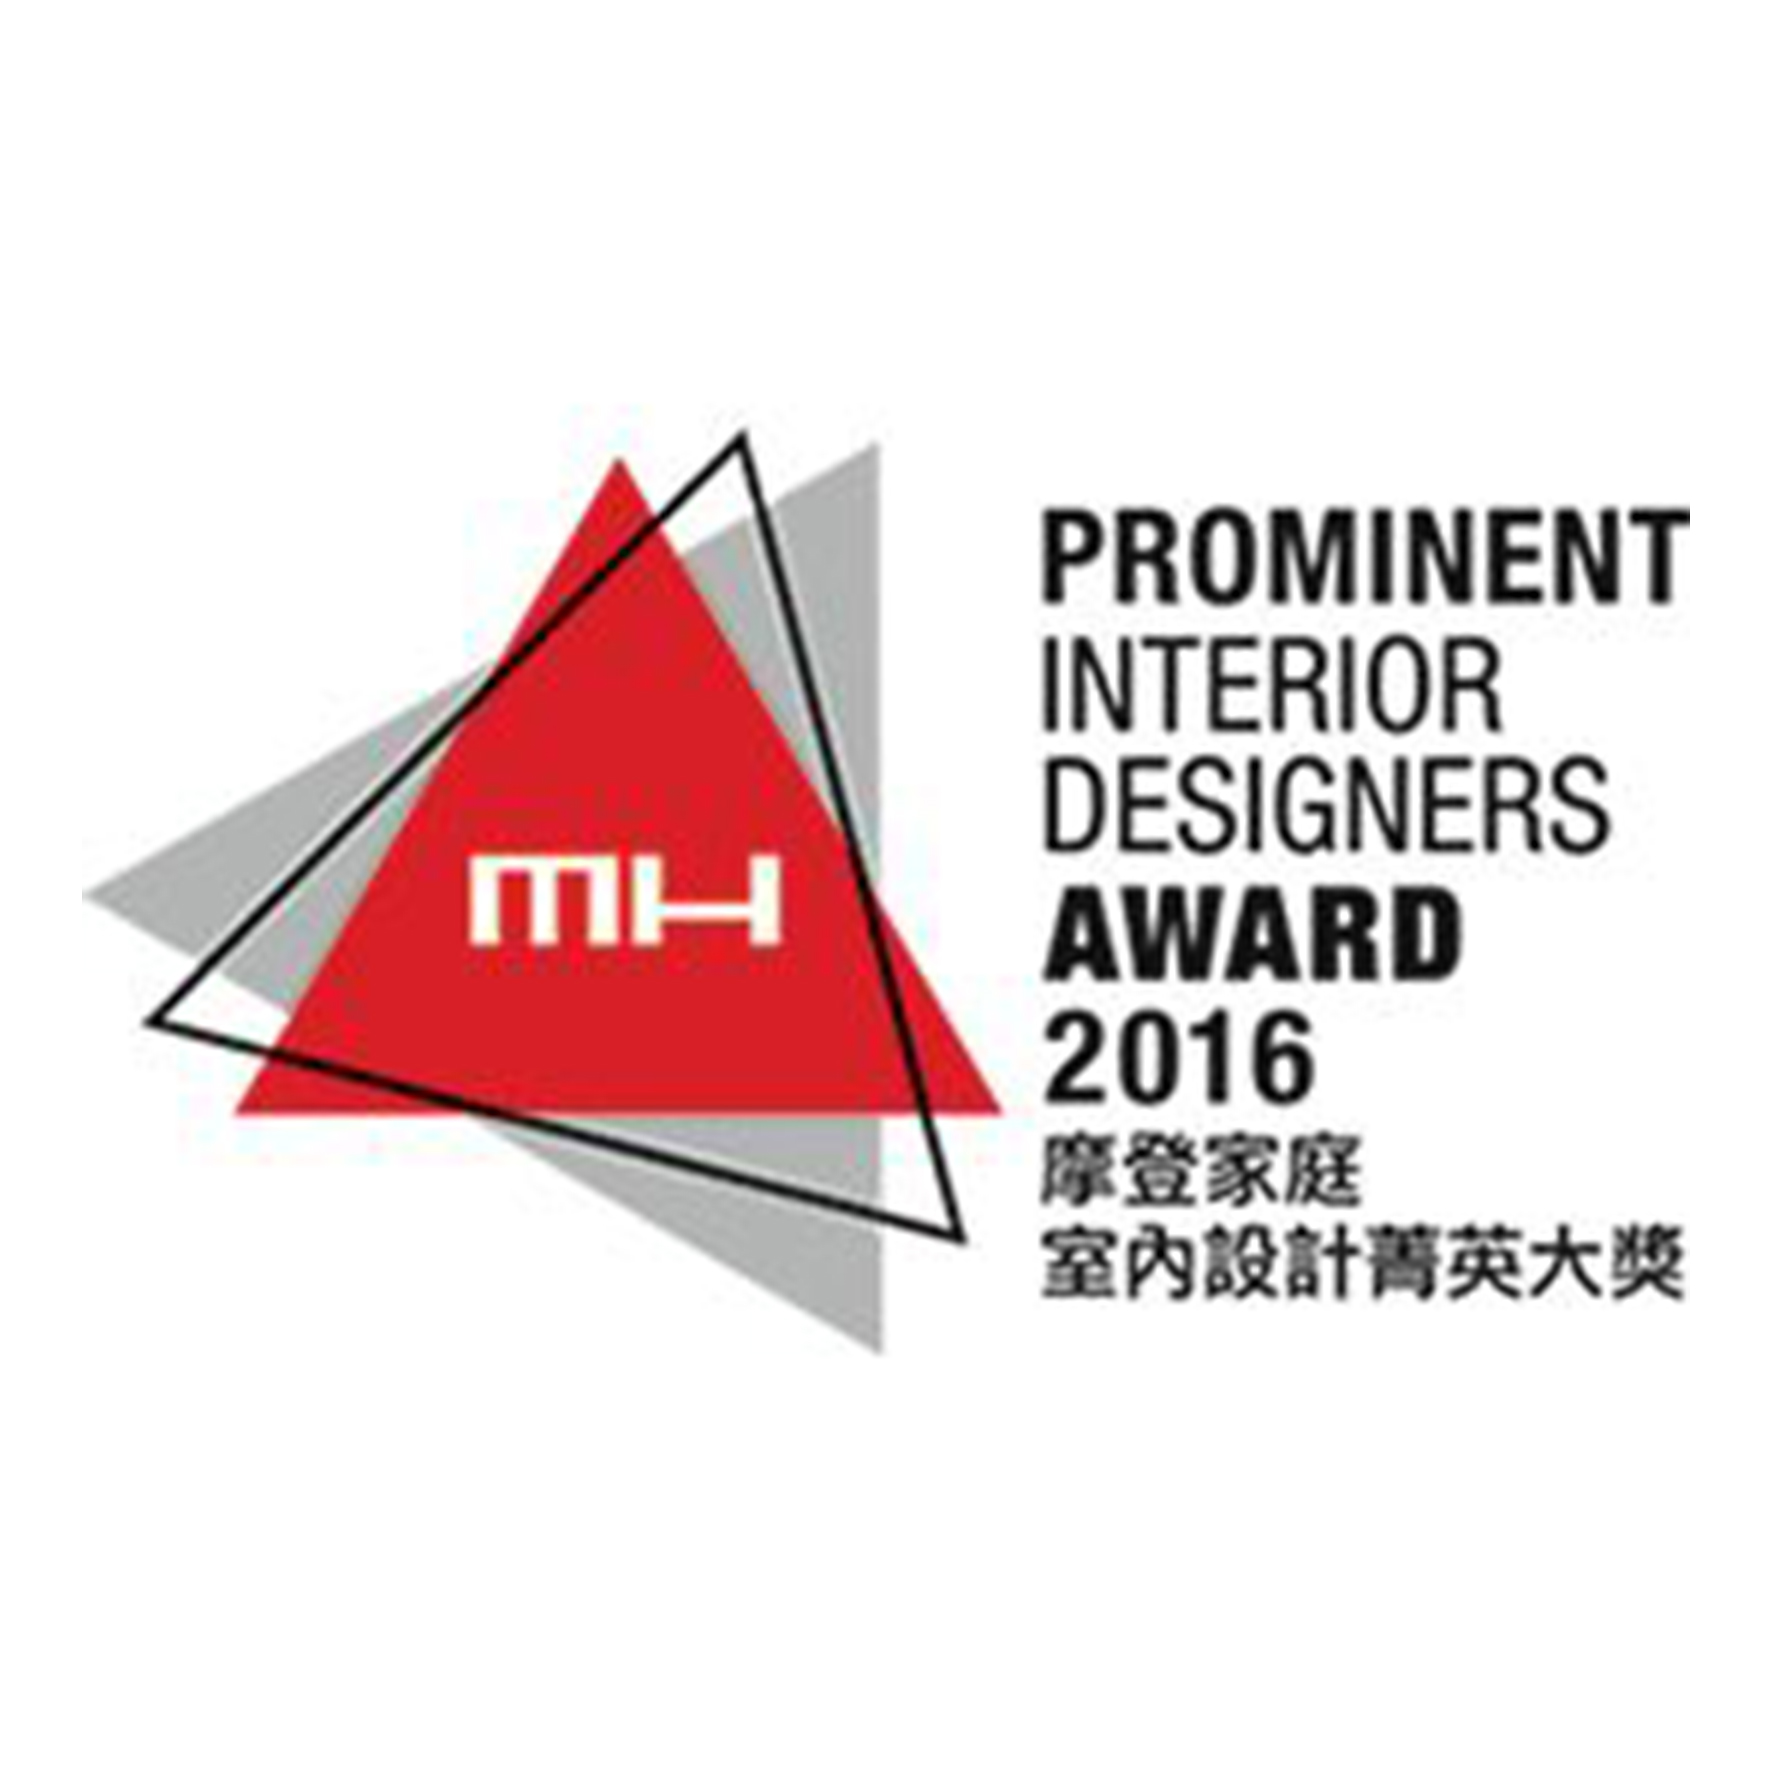 MH Prominent Interior Designer Award, Modern Home Designer Award 2016